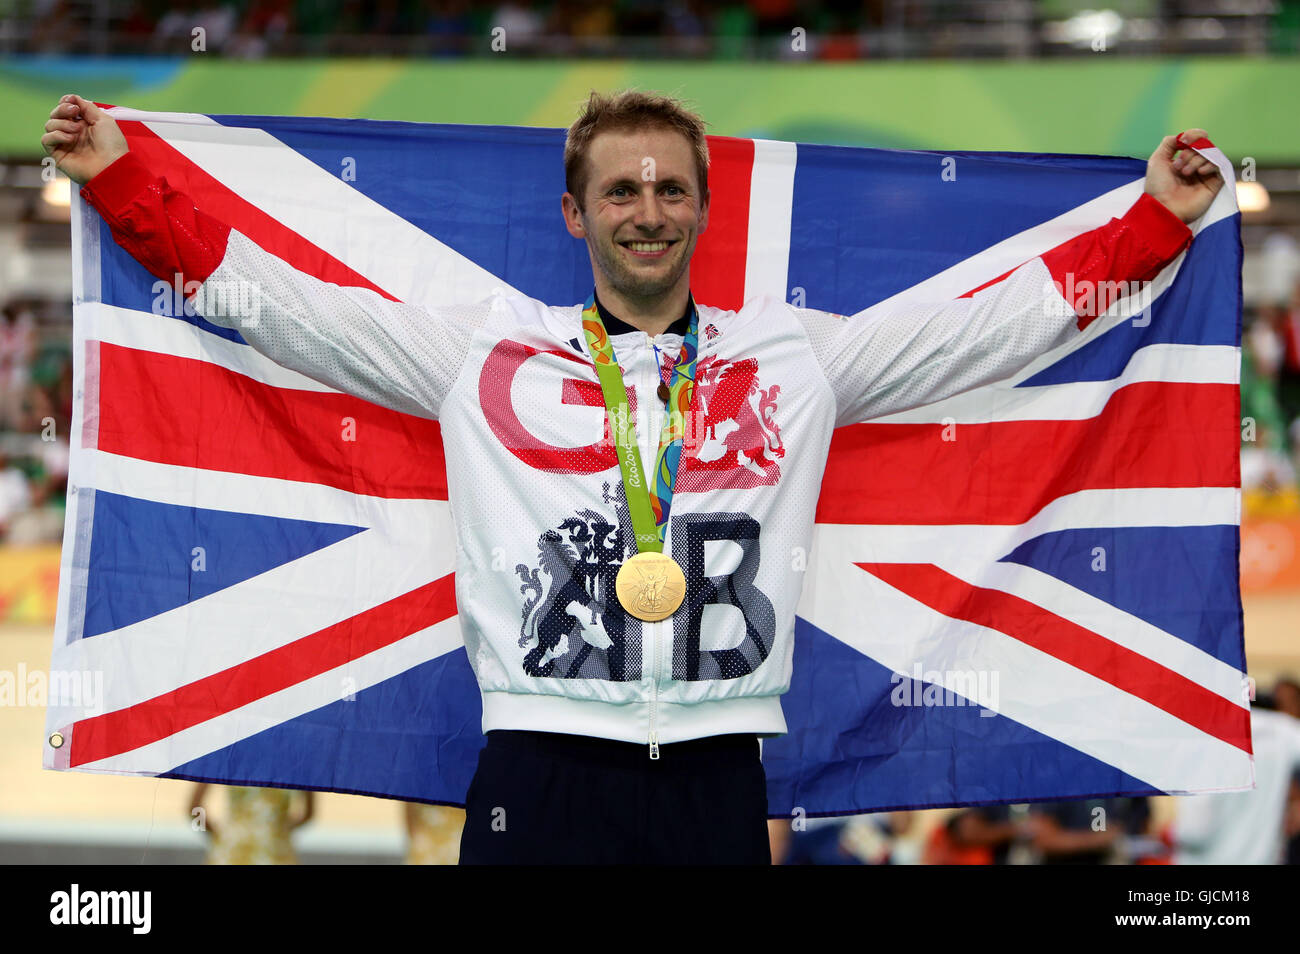 Der Brite Jason Kenny gewann die Goldmedaille im Sprint der Herren mit Teamkollege Callum Skinner nimmt das Silber am neunten Tag der Olympischen Spiele in Rio, Brasilien. Stockfoto